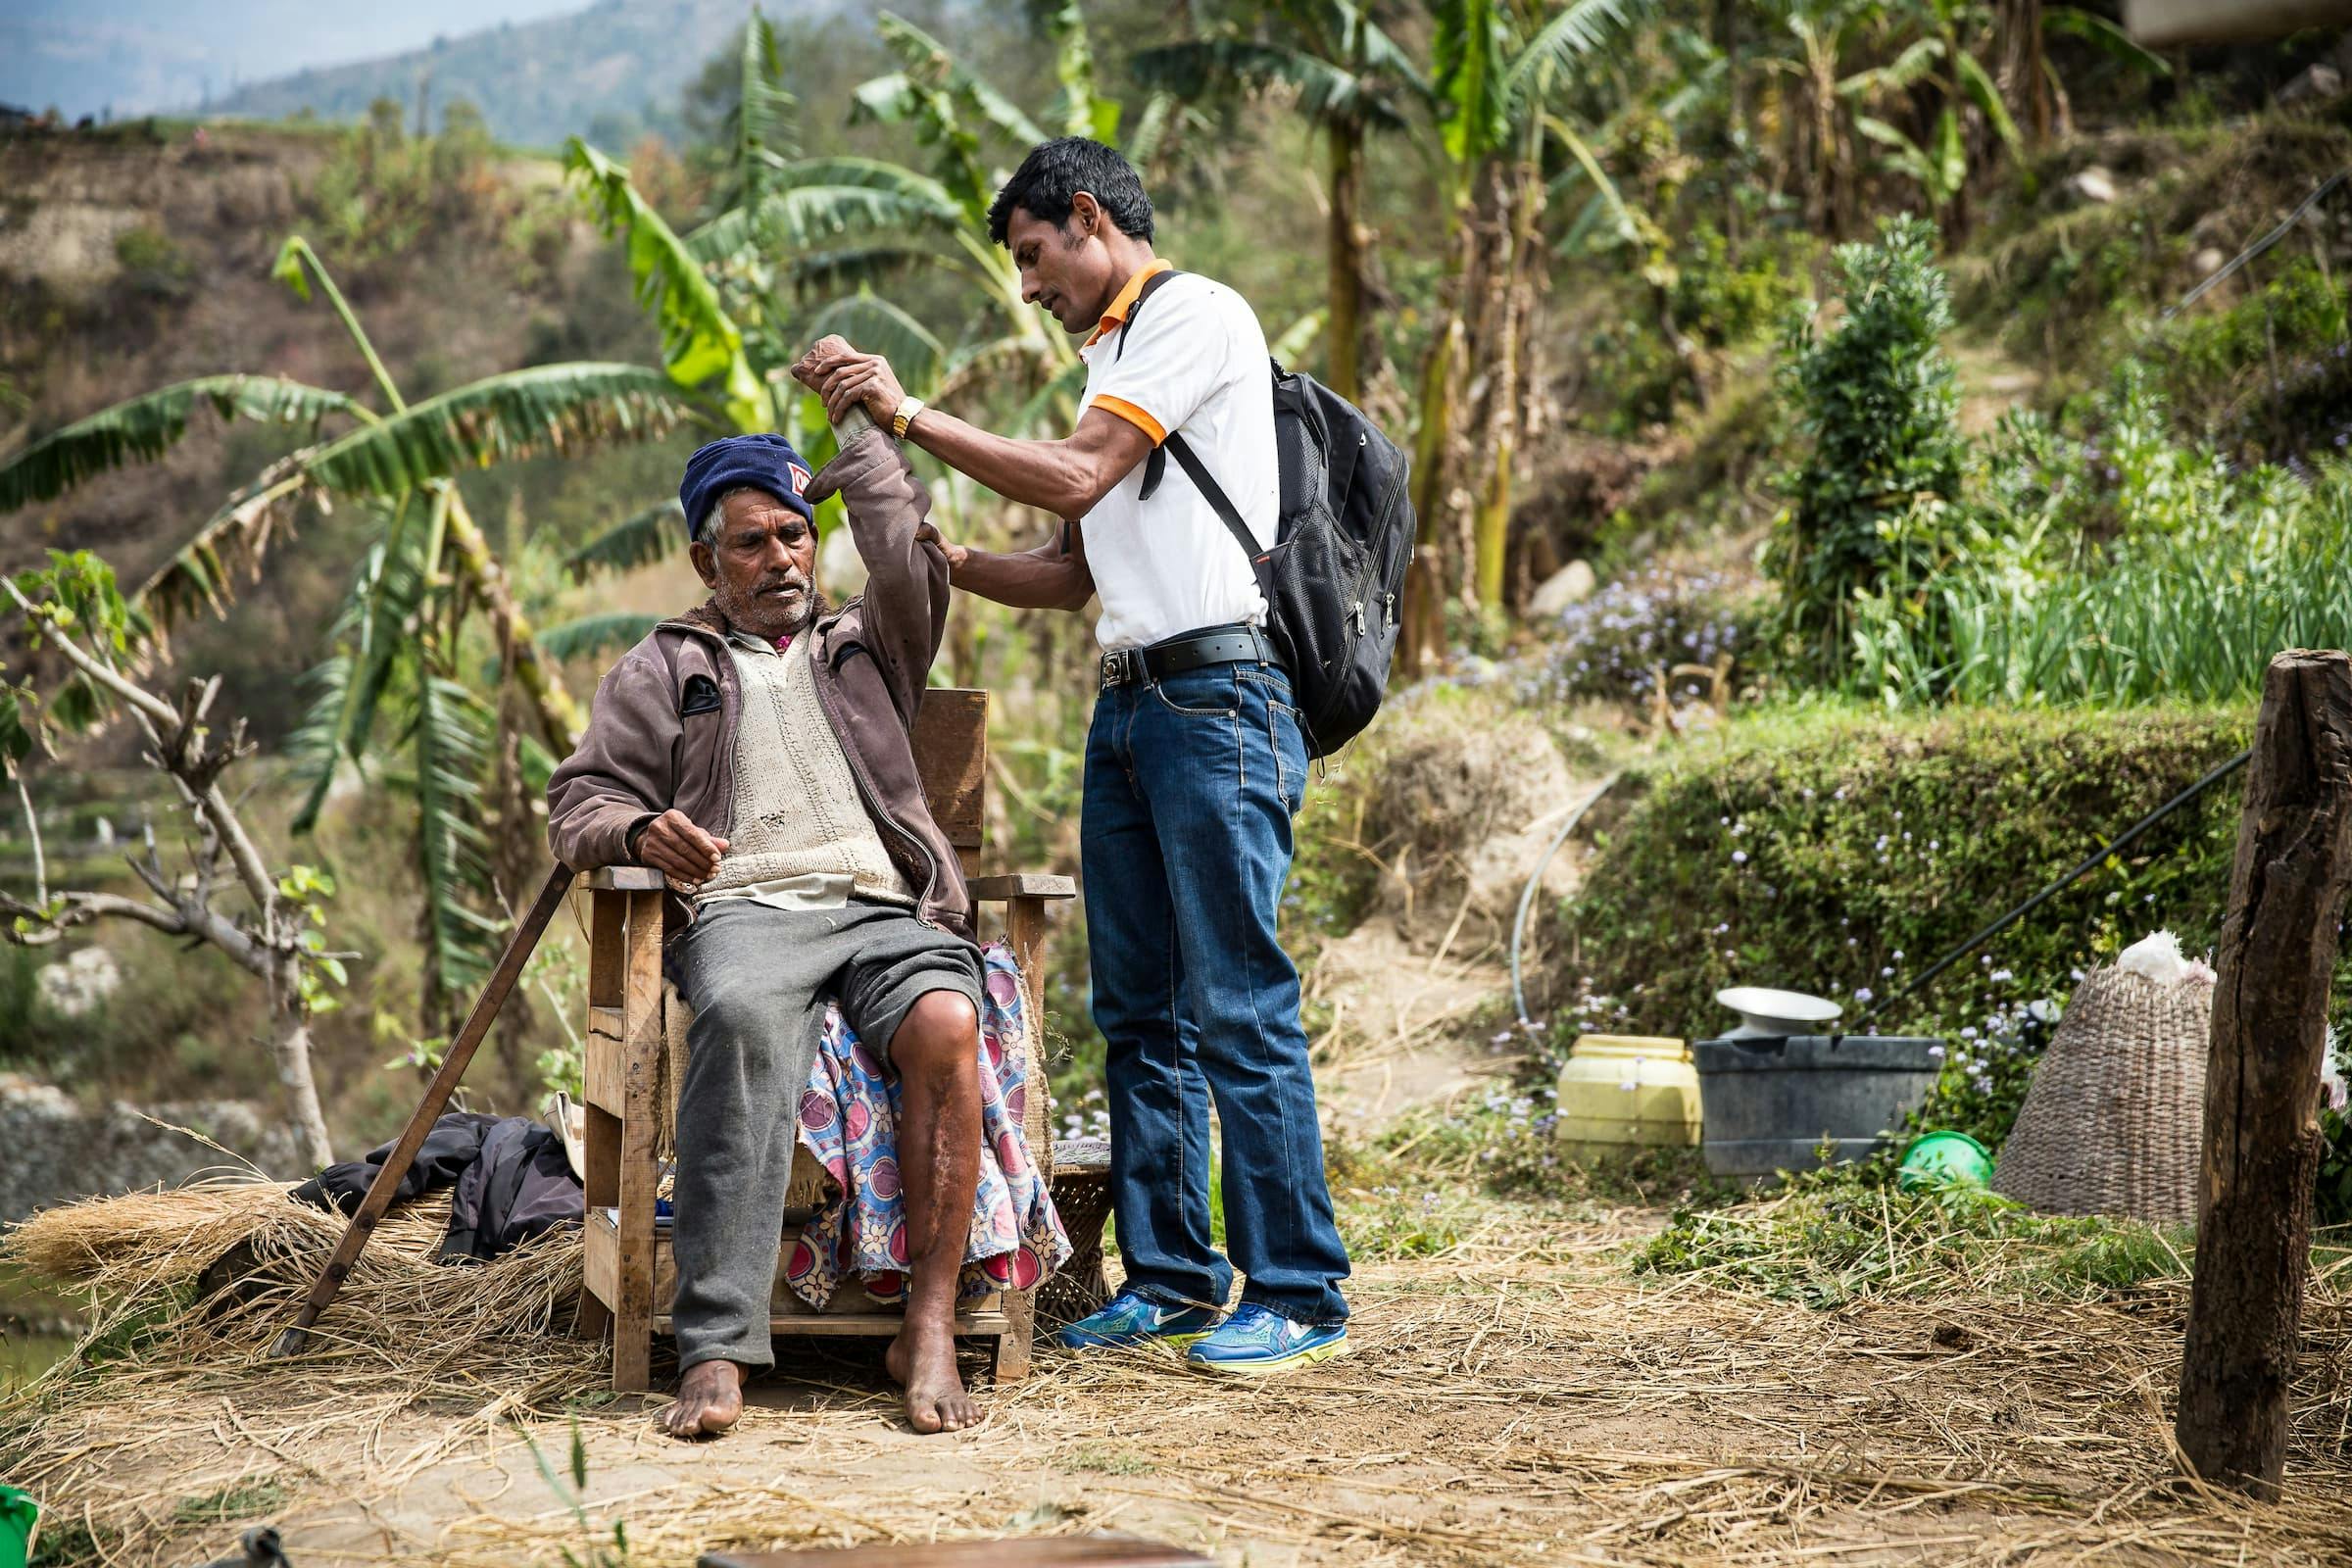 Ein junger FAIRMED-Mitarbeiter streckt den Arm eines alten Mannes, um zu schauen, ob dessen Lepra-Erkrankung seine Mobilität beeinträchtigt. Der alte Mann sitzt im Freien auf einem Stuhl. Im Hintergrund sind Palmen und Bäume zu sehen. Die Szenerie ist im ländlichen Indien angesiedelt.